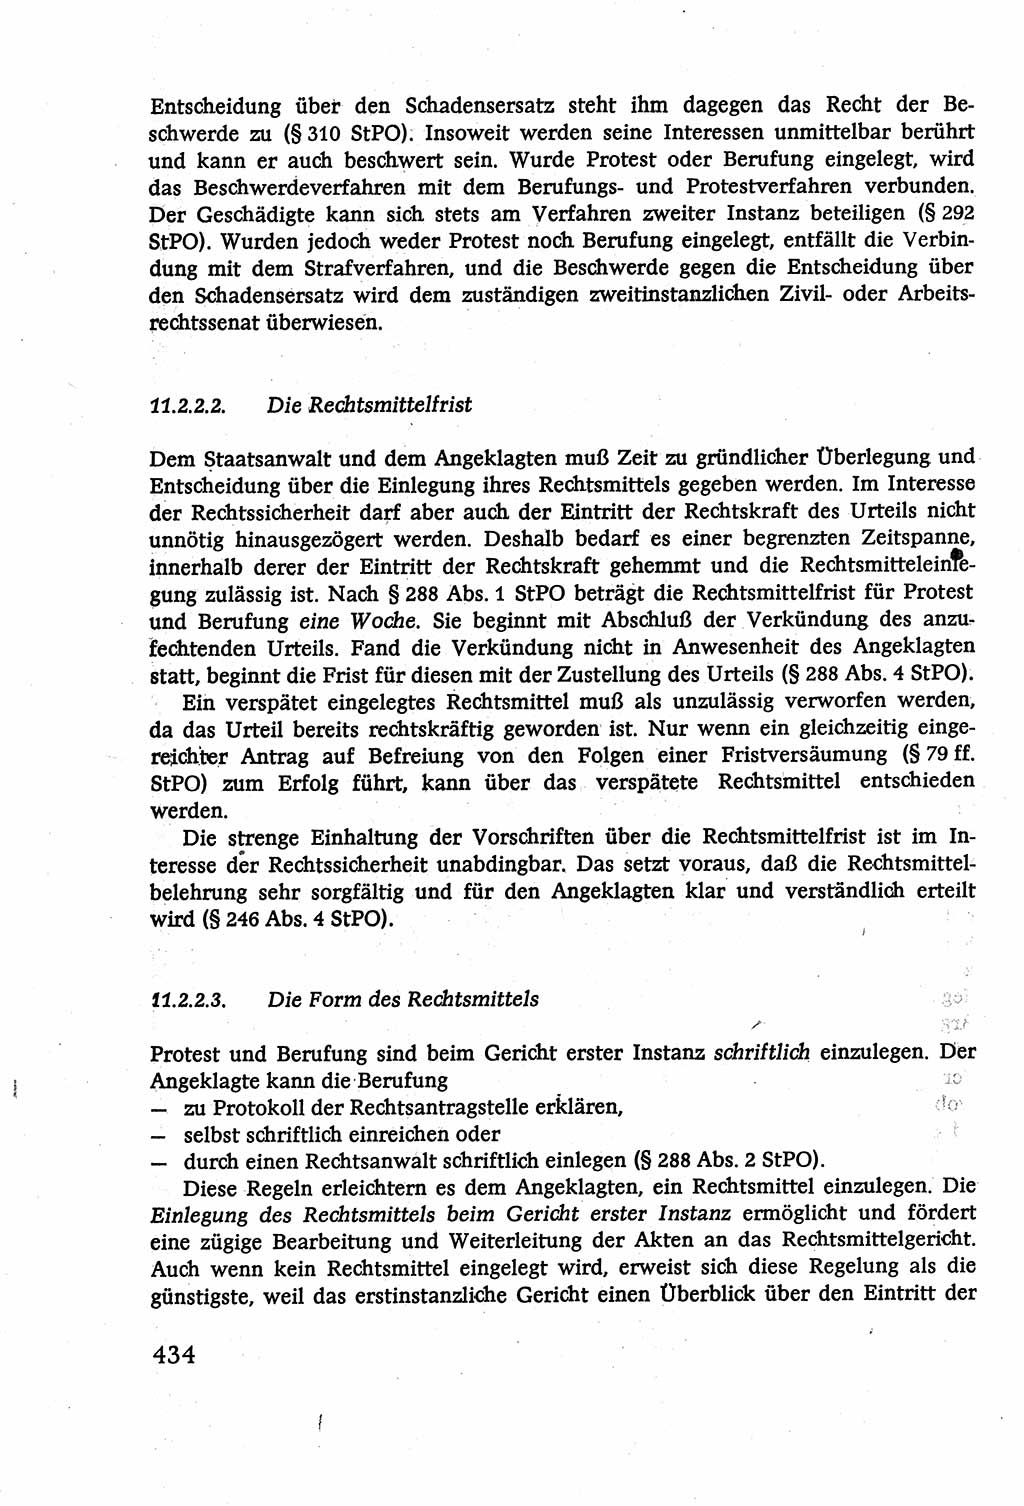 Strafverfahrensrecht [Deutsche Demokratische Republik (DDR)], Lehrbuch 1977, Seite 434 (Strafverf.-R. DDR Lb. 1977, S. 434)